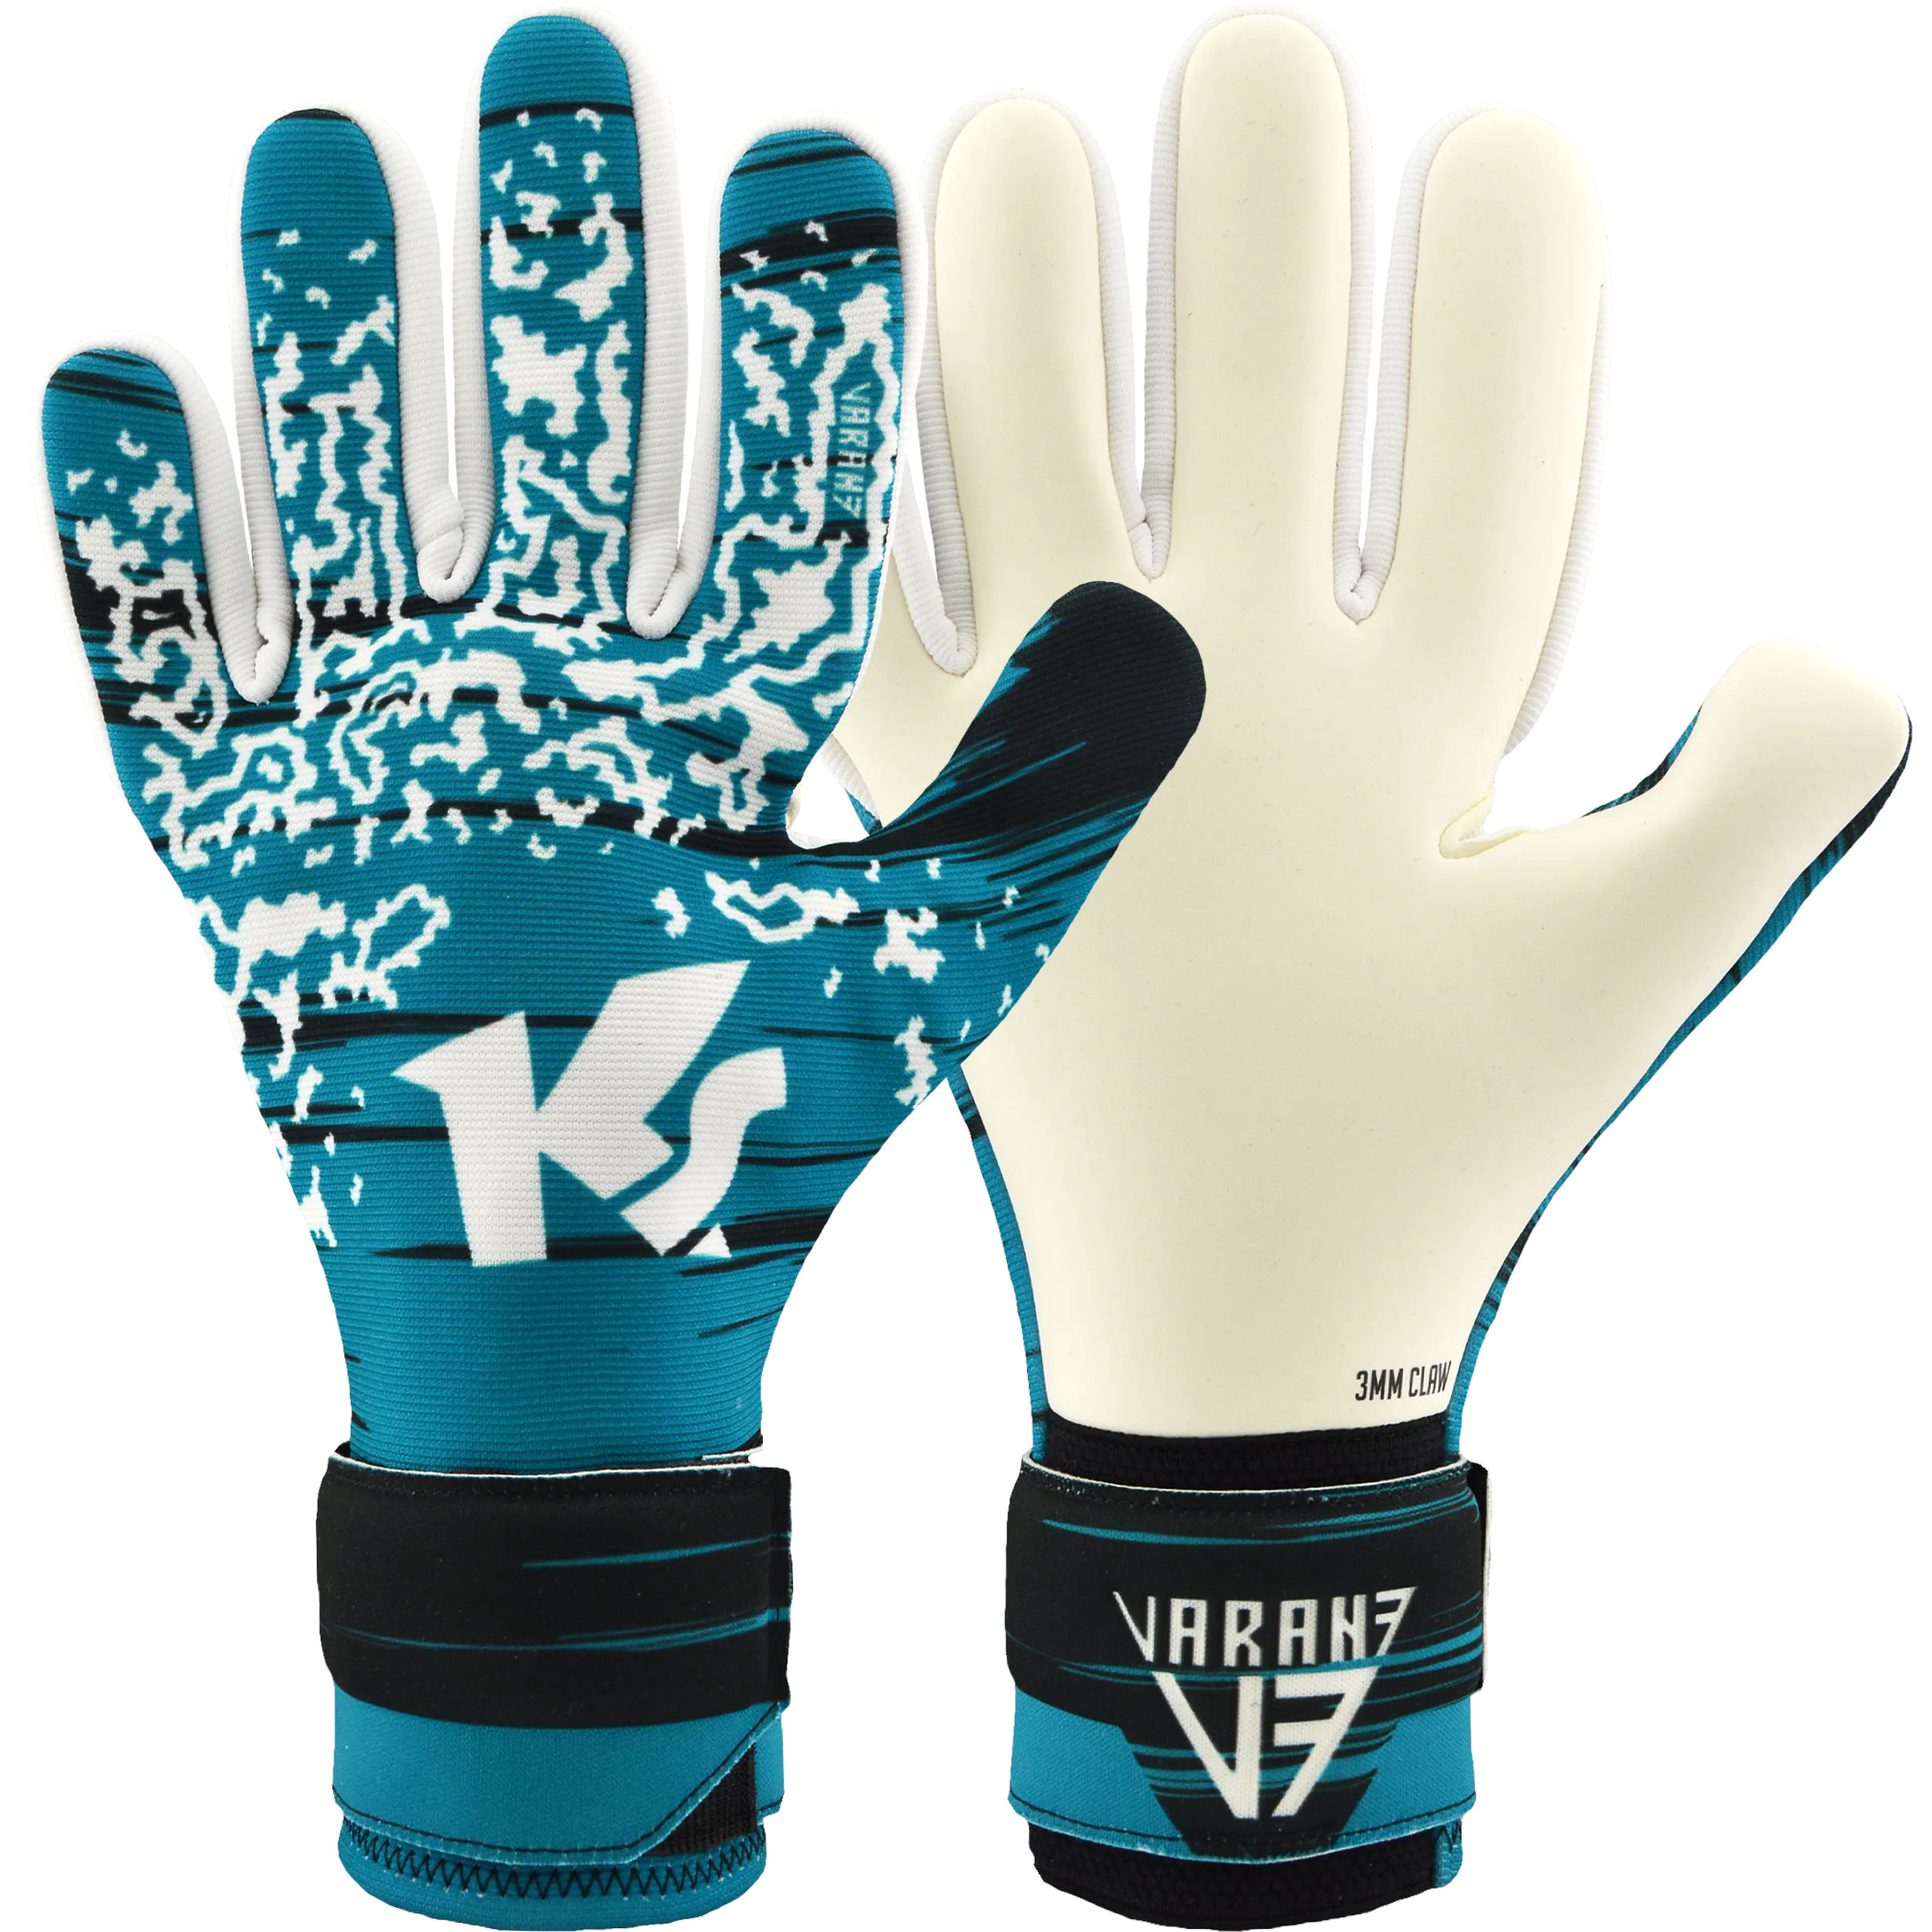 Goalkeeper's gloves KEEPERsport Varan7 Challenge NC